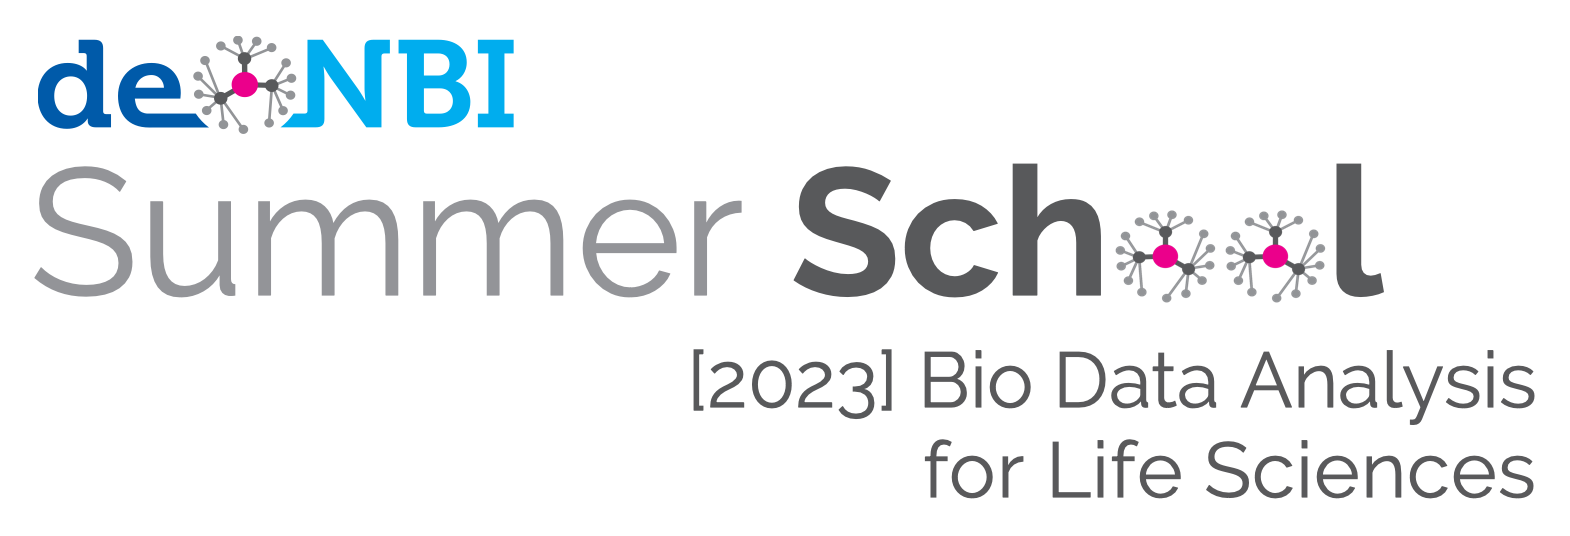 Summer School 2023 2zb